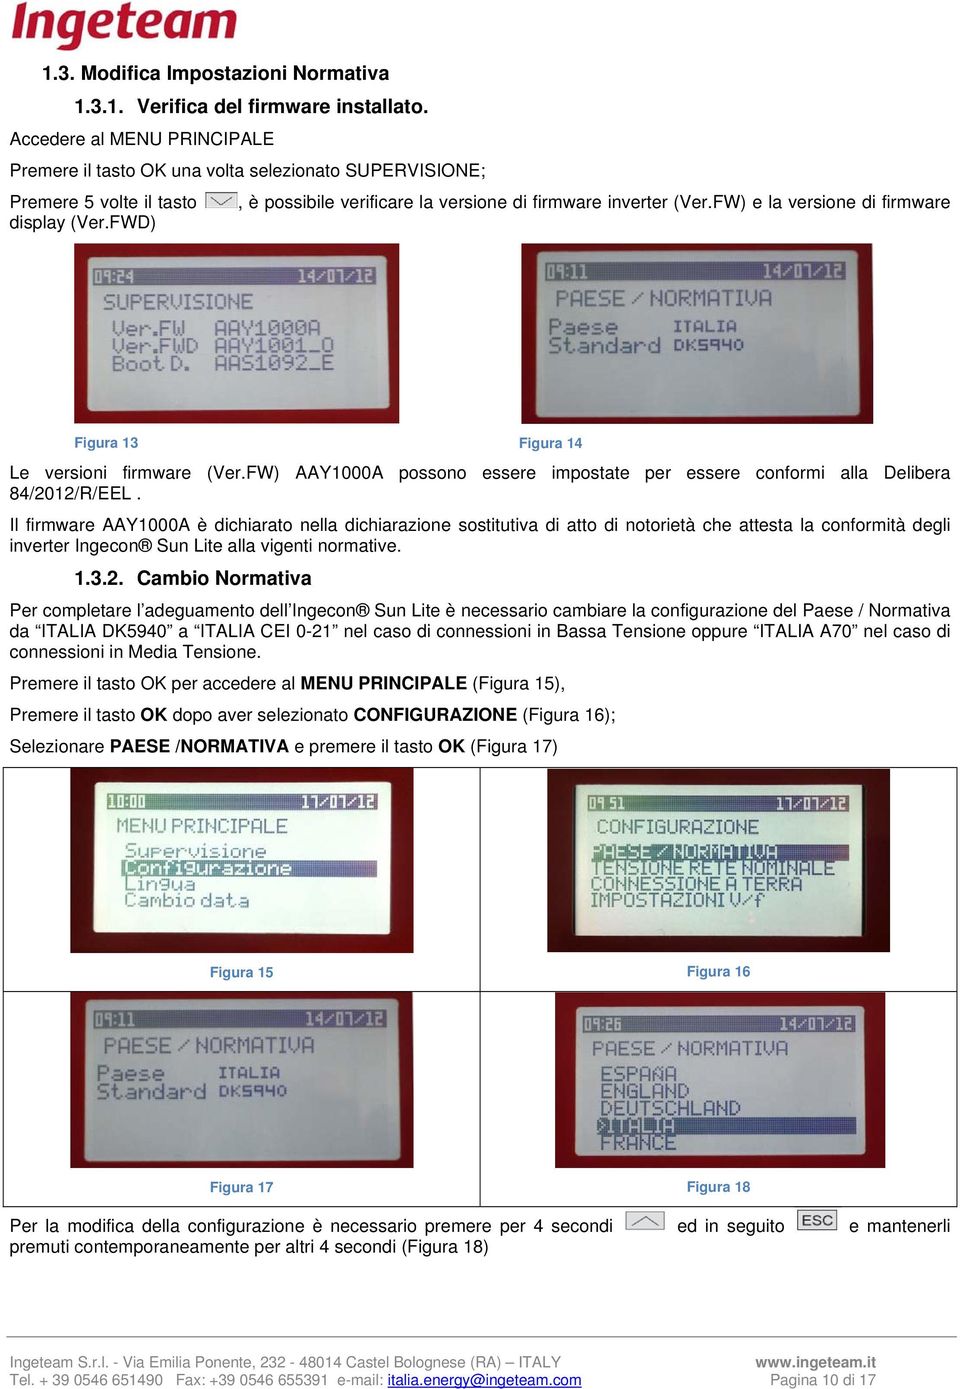 FW) e la versione di firmware display (Ver.FWD) Figura 13 Figura 14 Le versioni firmware (Ver.FW) AAY1000A possono essere impostate per essere conformi alla Delibera 84/2012/R/EEL.